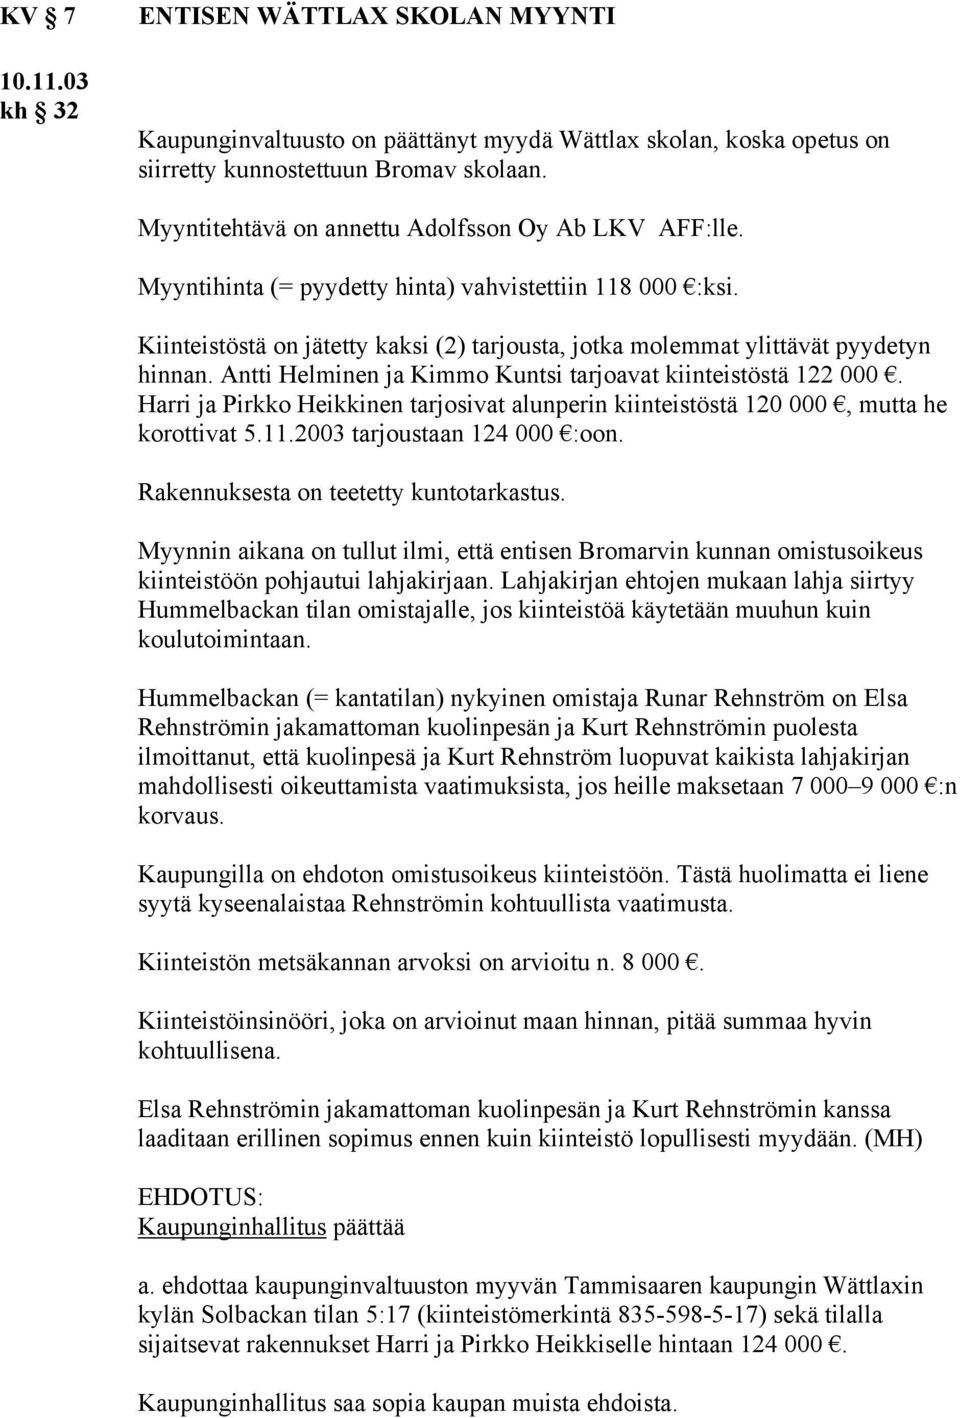 Antti Helminen ja Kimmo Kuntsi tarjoavat kiinteistöstä 122 000. Harri ja Pirkko Heikkinen tarjosivat alunperin kiinteistöstä 120 000, mutta he korottivat 5.11.2003 tarjoustaan 124 000 :oon.